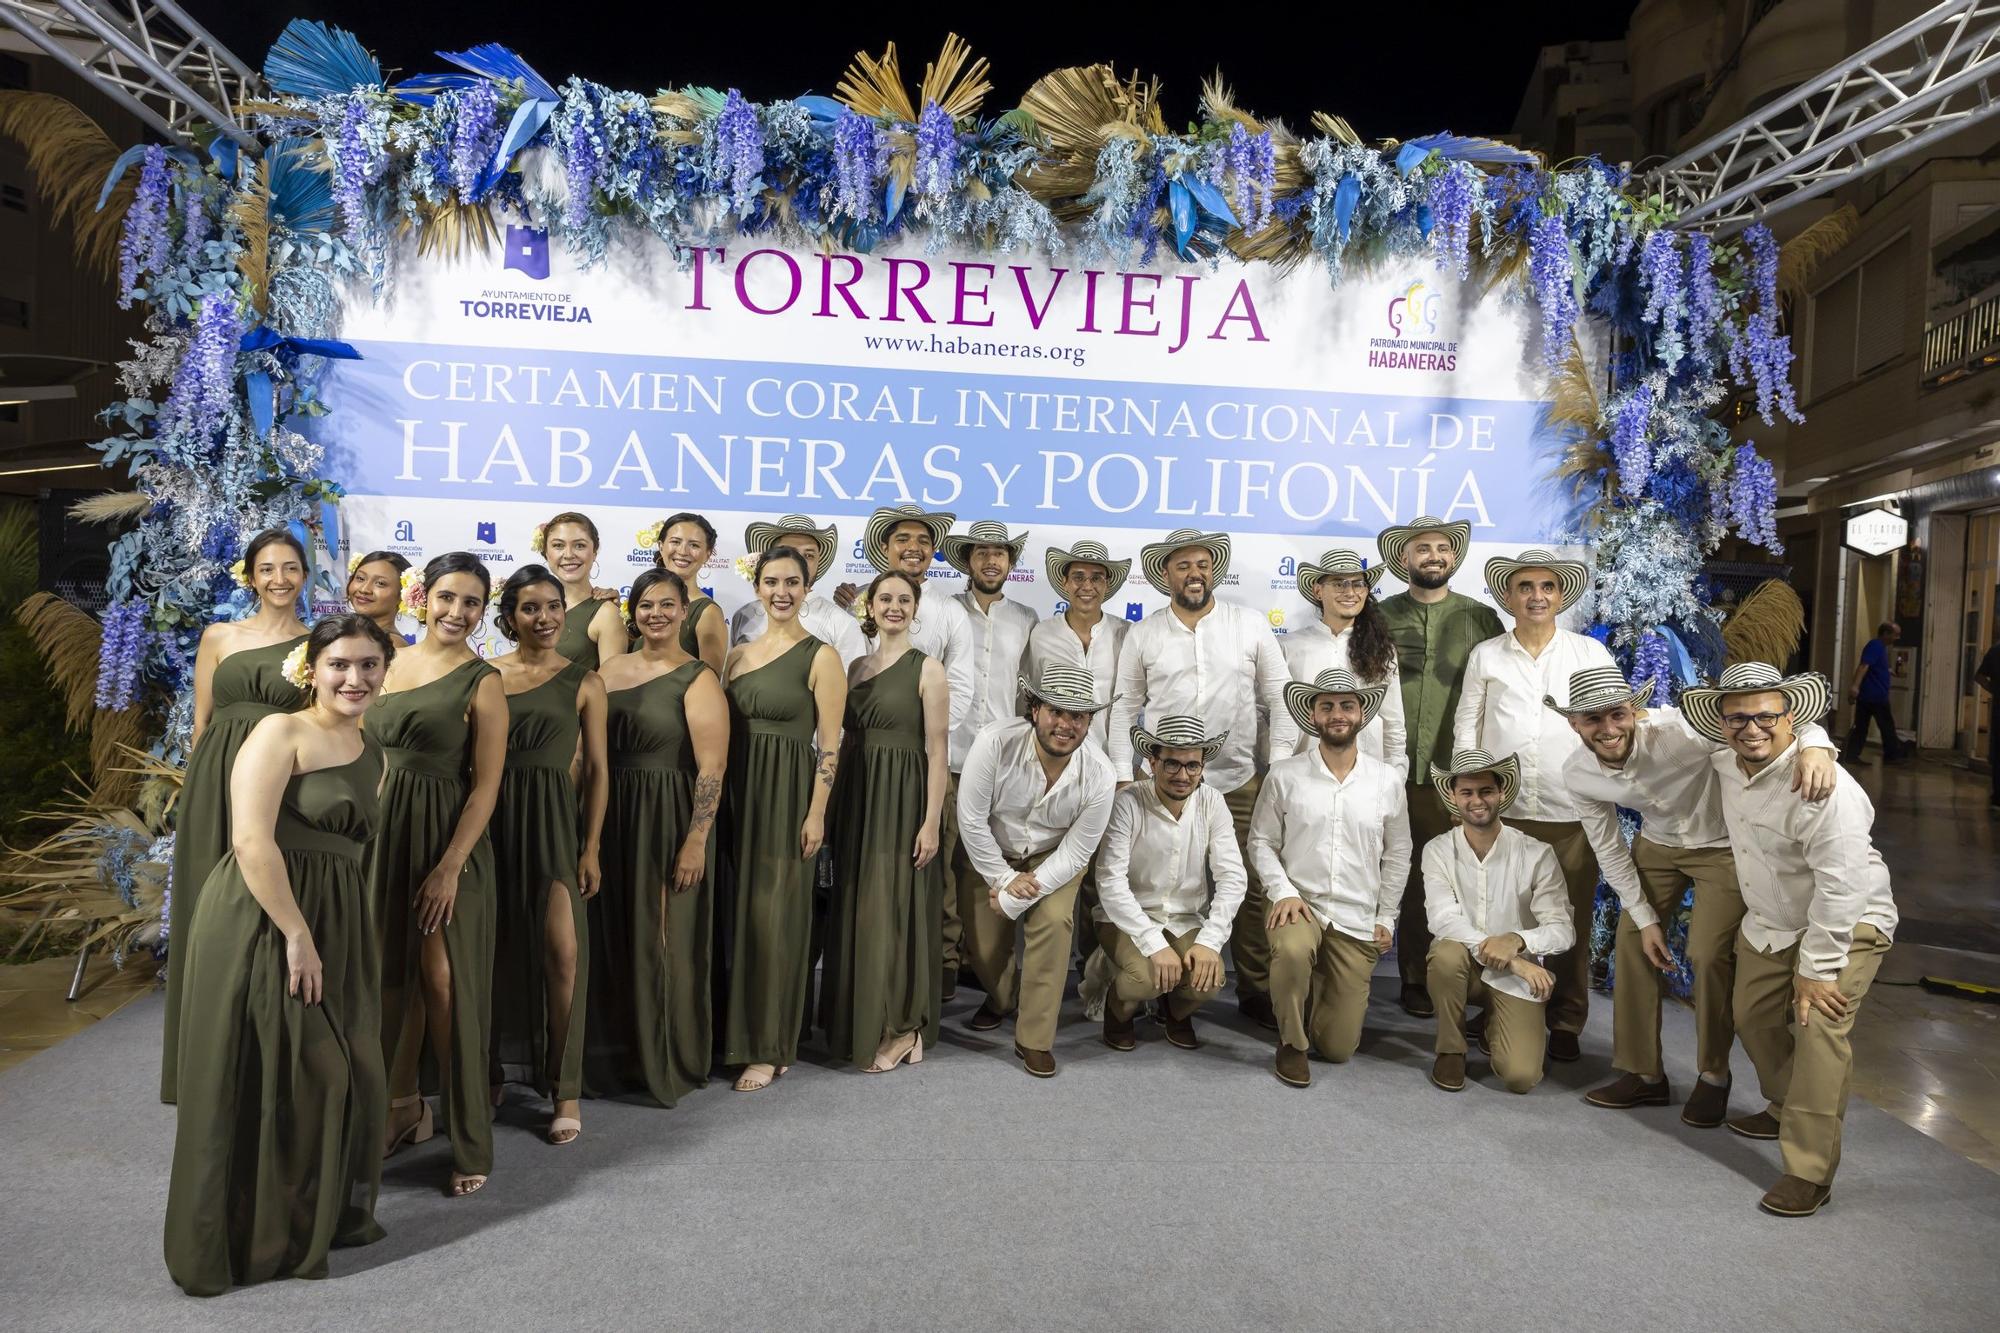 Cuarta velada del Certamen Internacional de Habaneras y Polifonía de Torrevieja